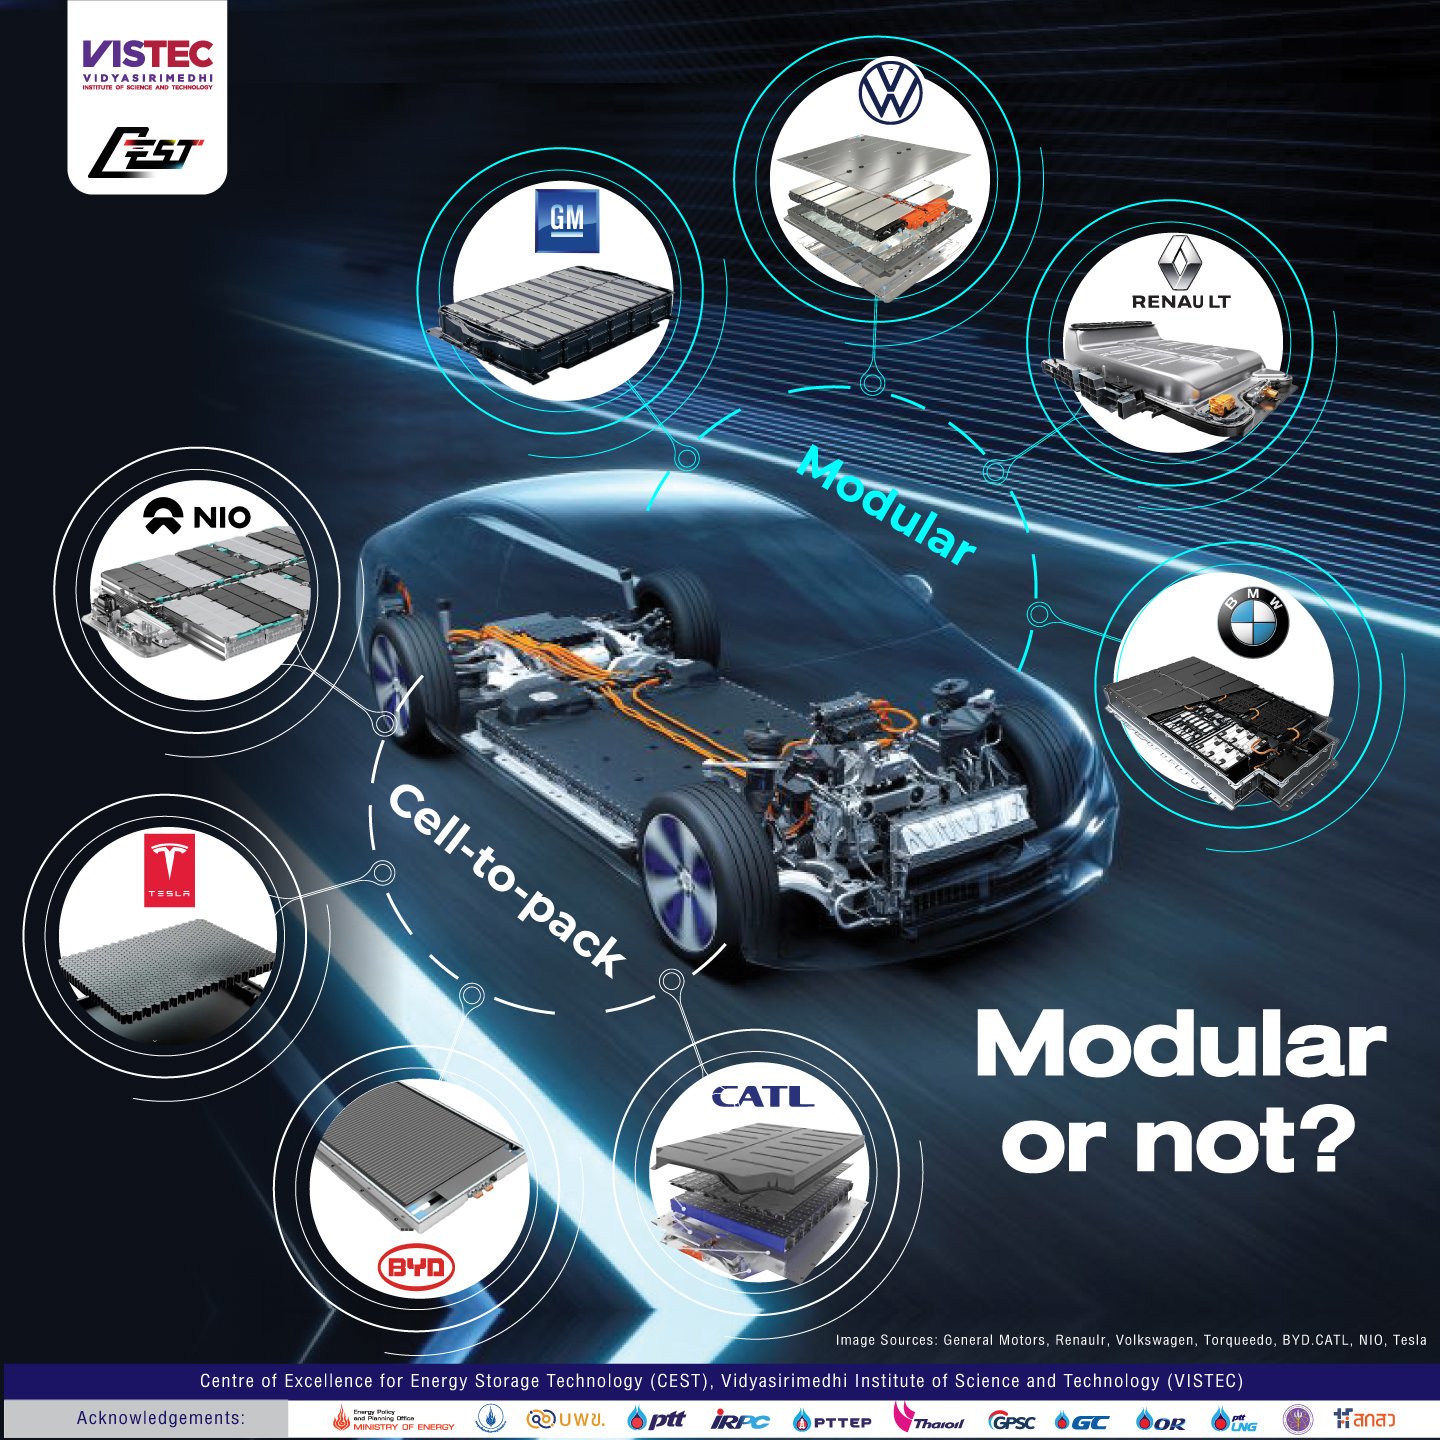 Modular or not? Image Sources: General Motors, Renaulr, Volkswagen, Torqueedo, BYD.CATL, NIO, Tesla